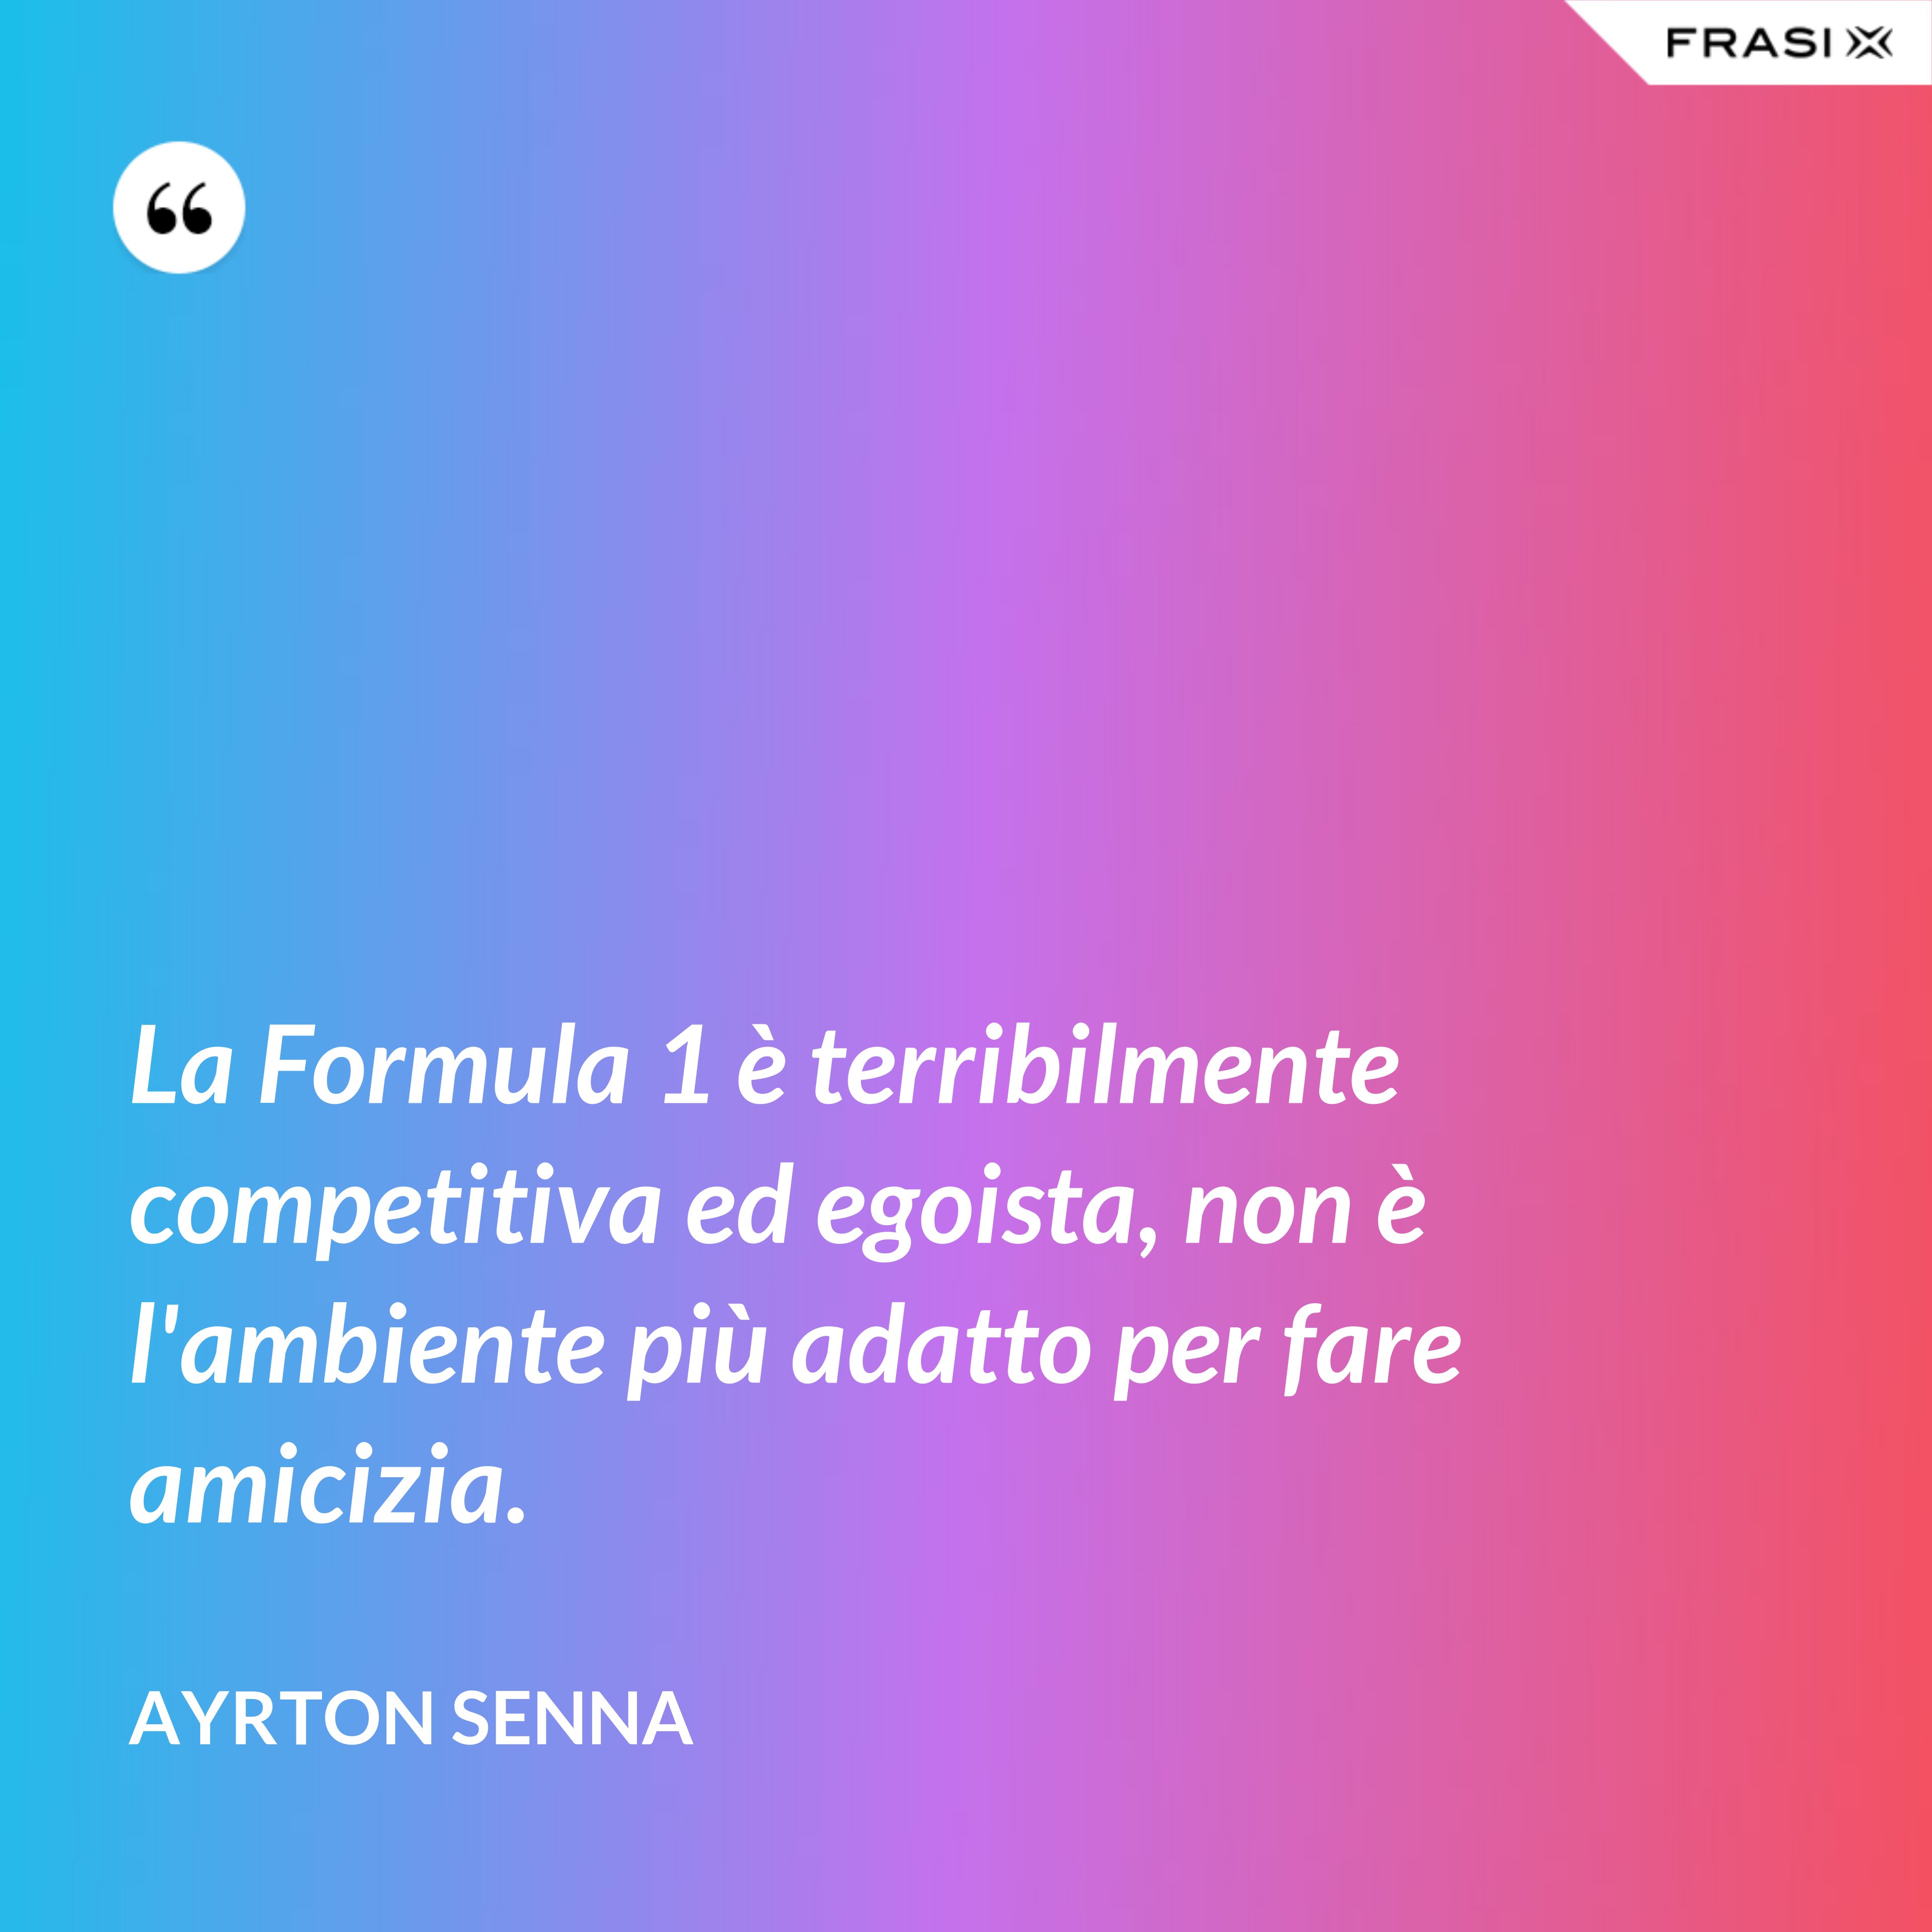 La Formula 1 è terribilmente competitiva ed egoista, non è l'ambiente più adatto per fare amicizia. - Ayrton Senna